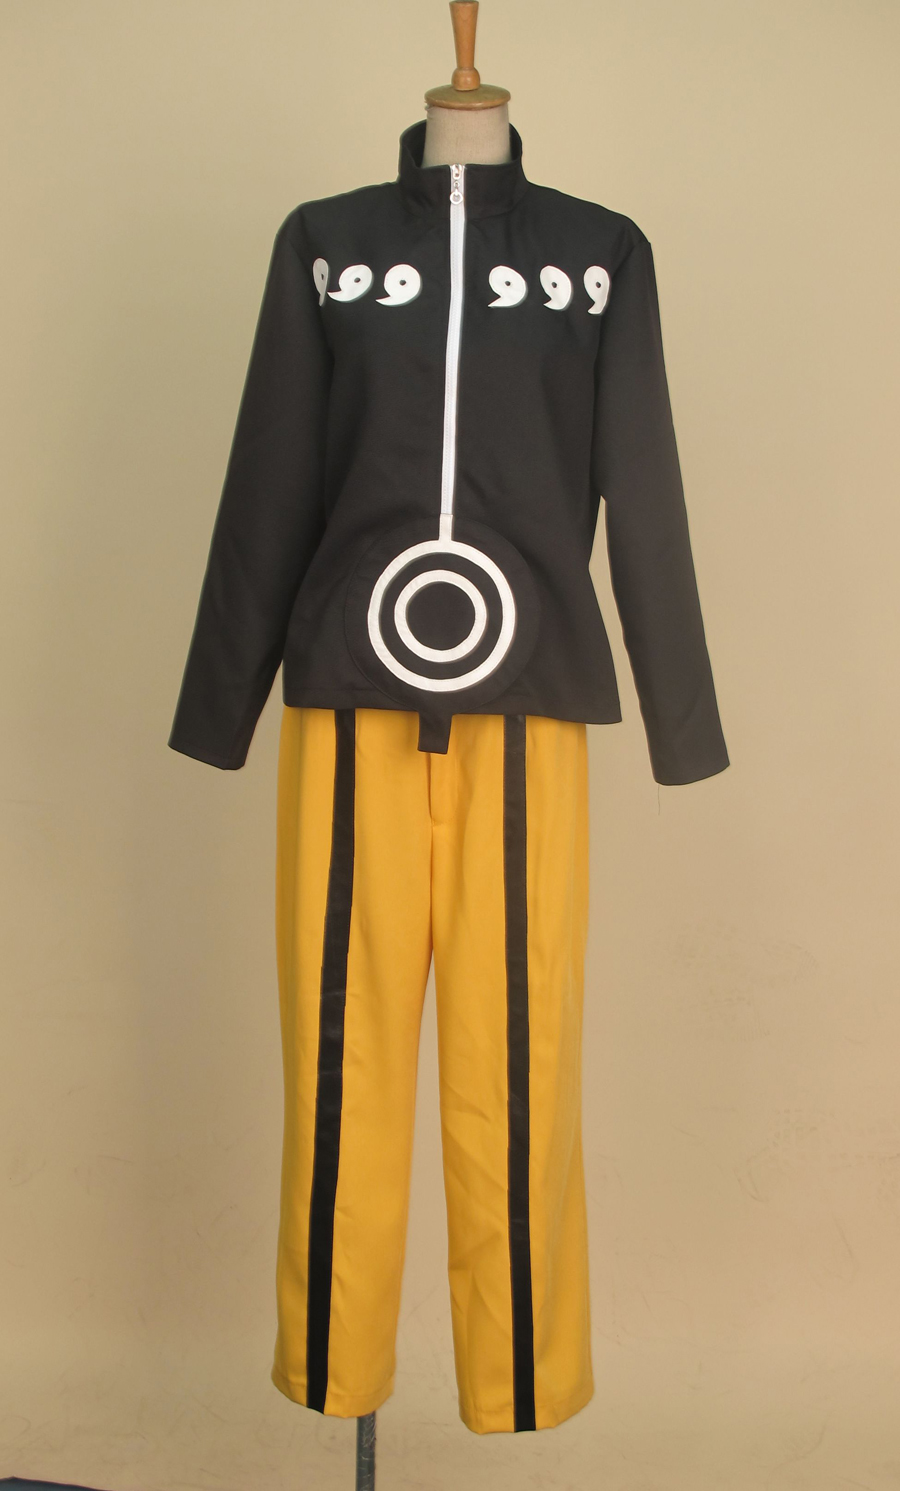 Naruto Uzumaki Naruto Nine-Tails Bijuu Mode Cosplay Costume